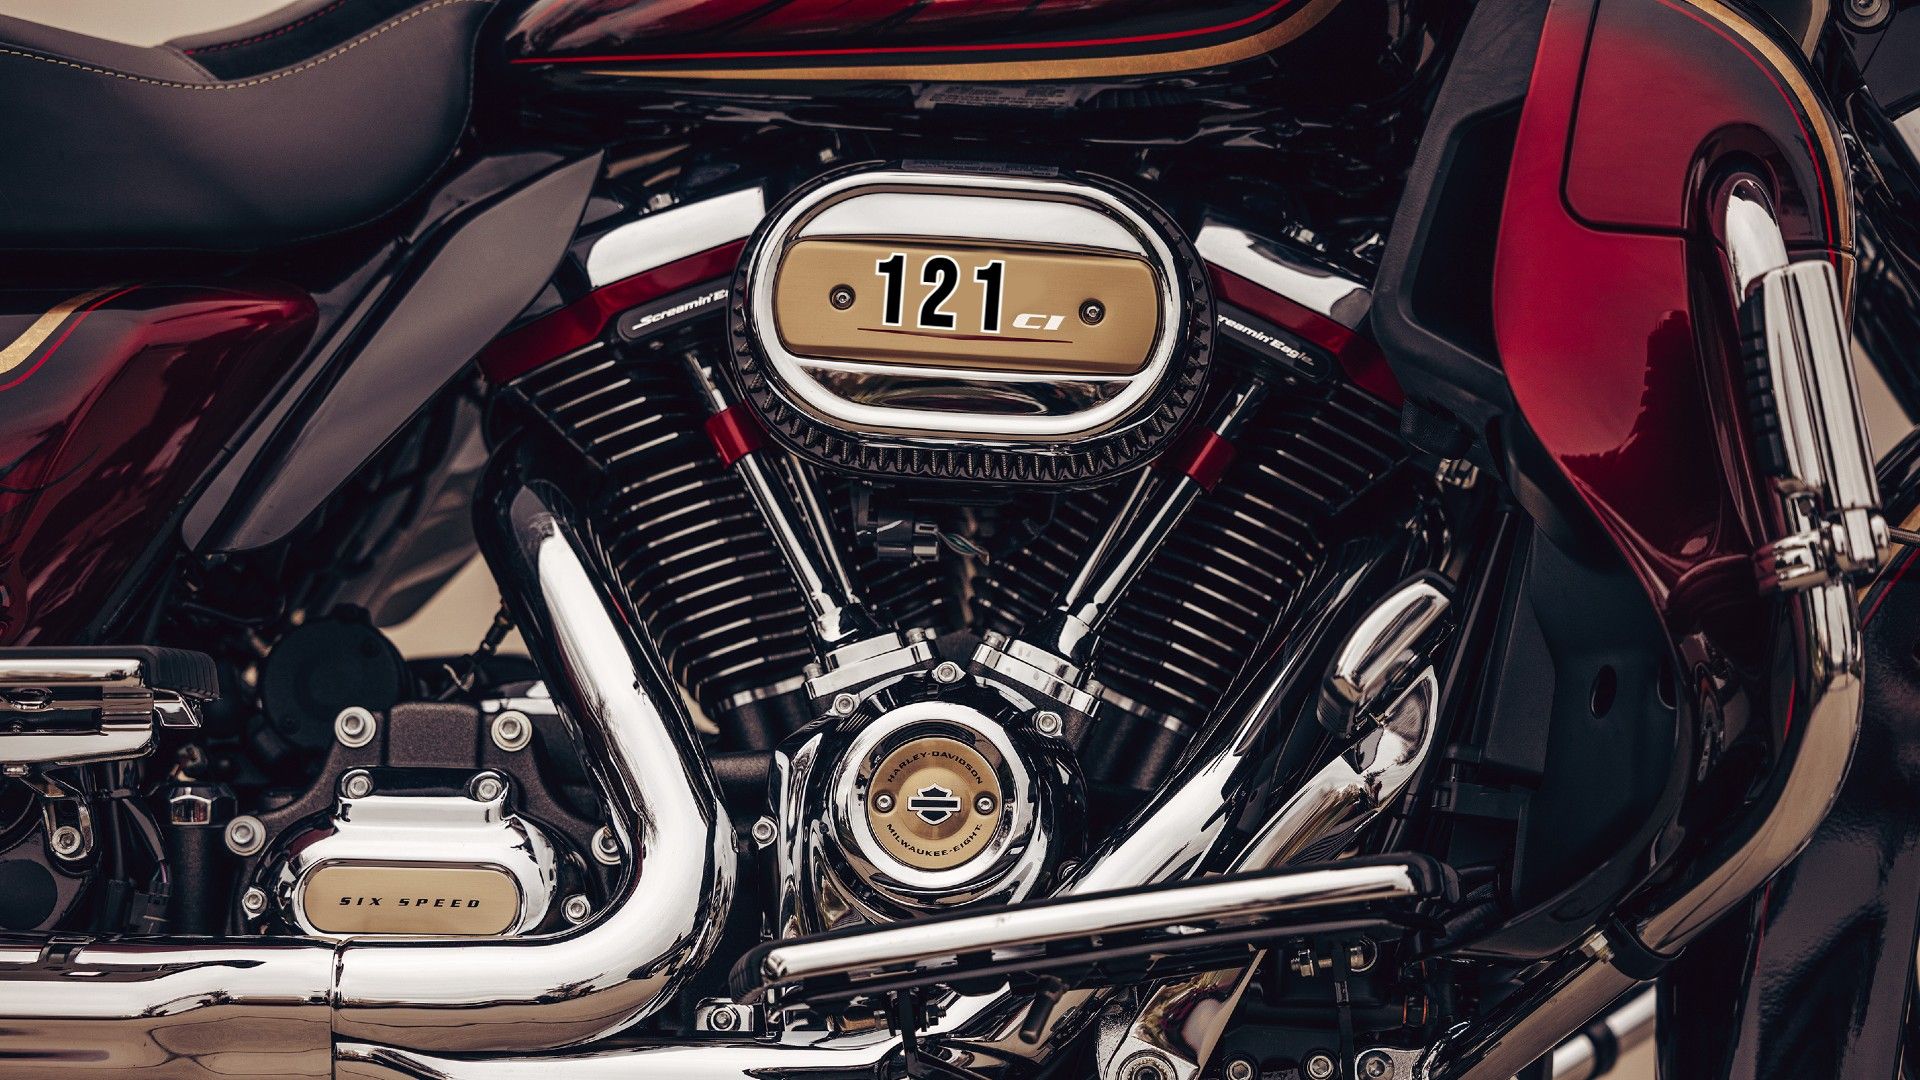 Harley-Davidson 121ci